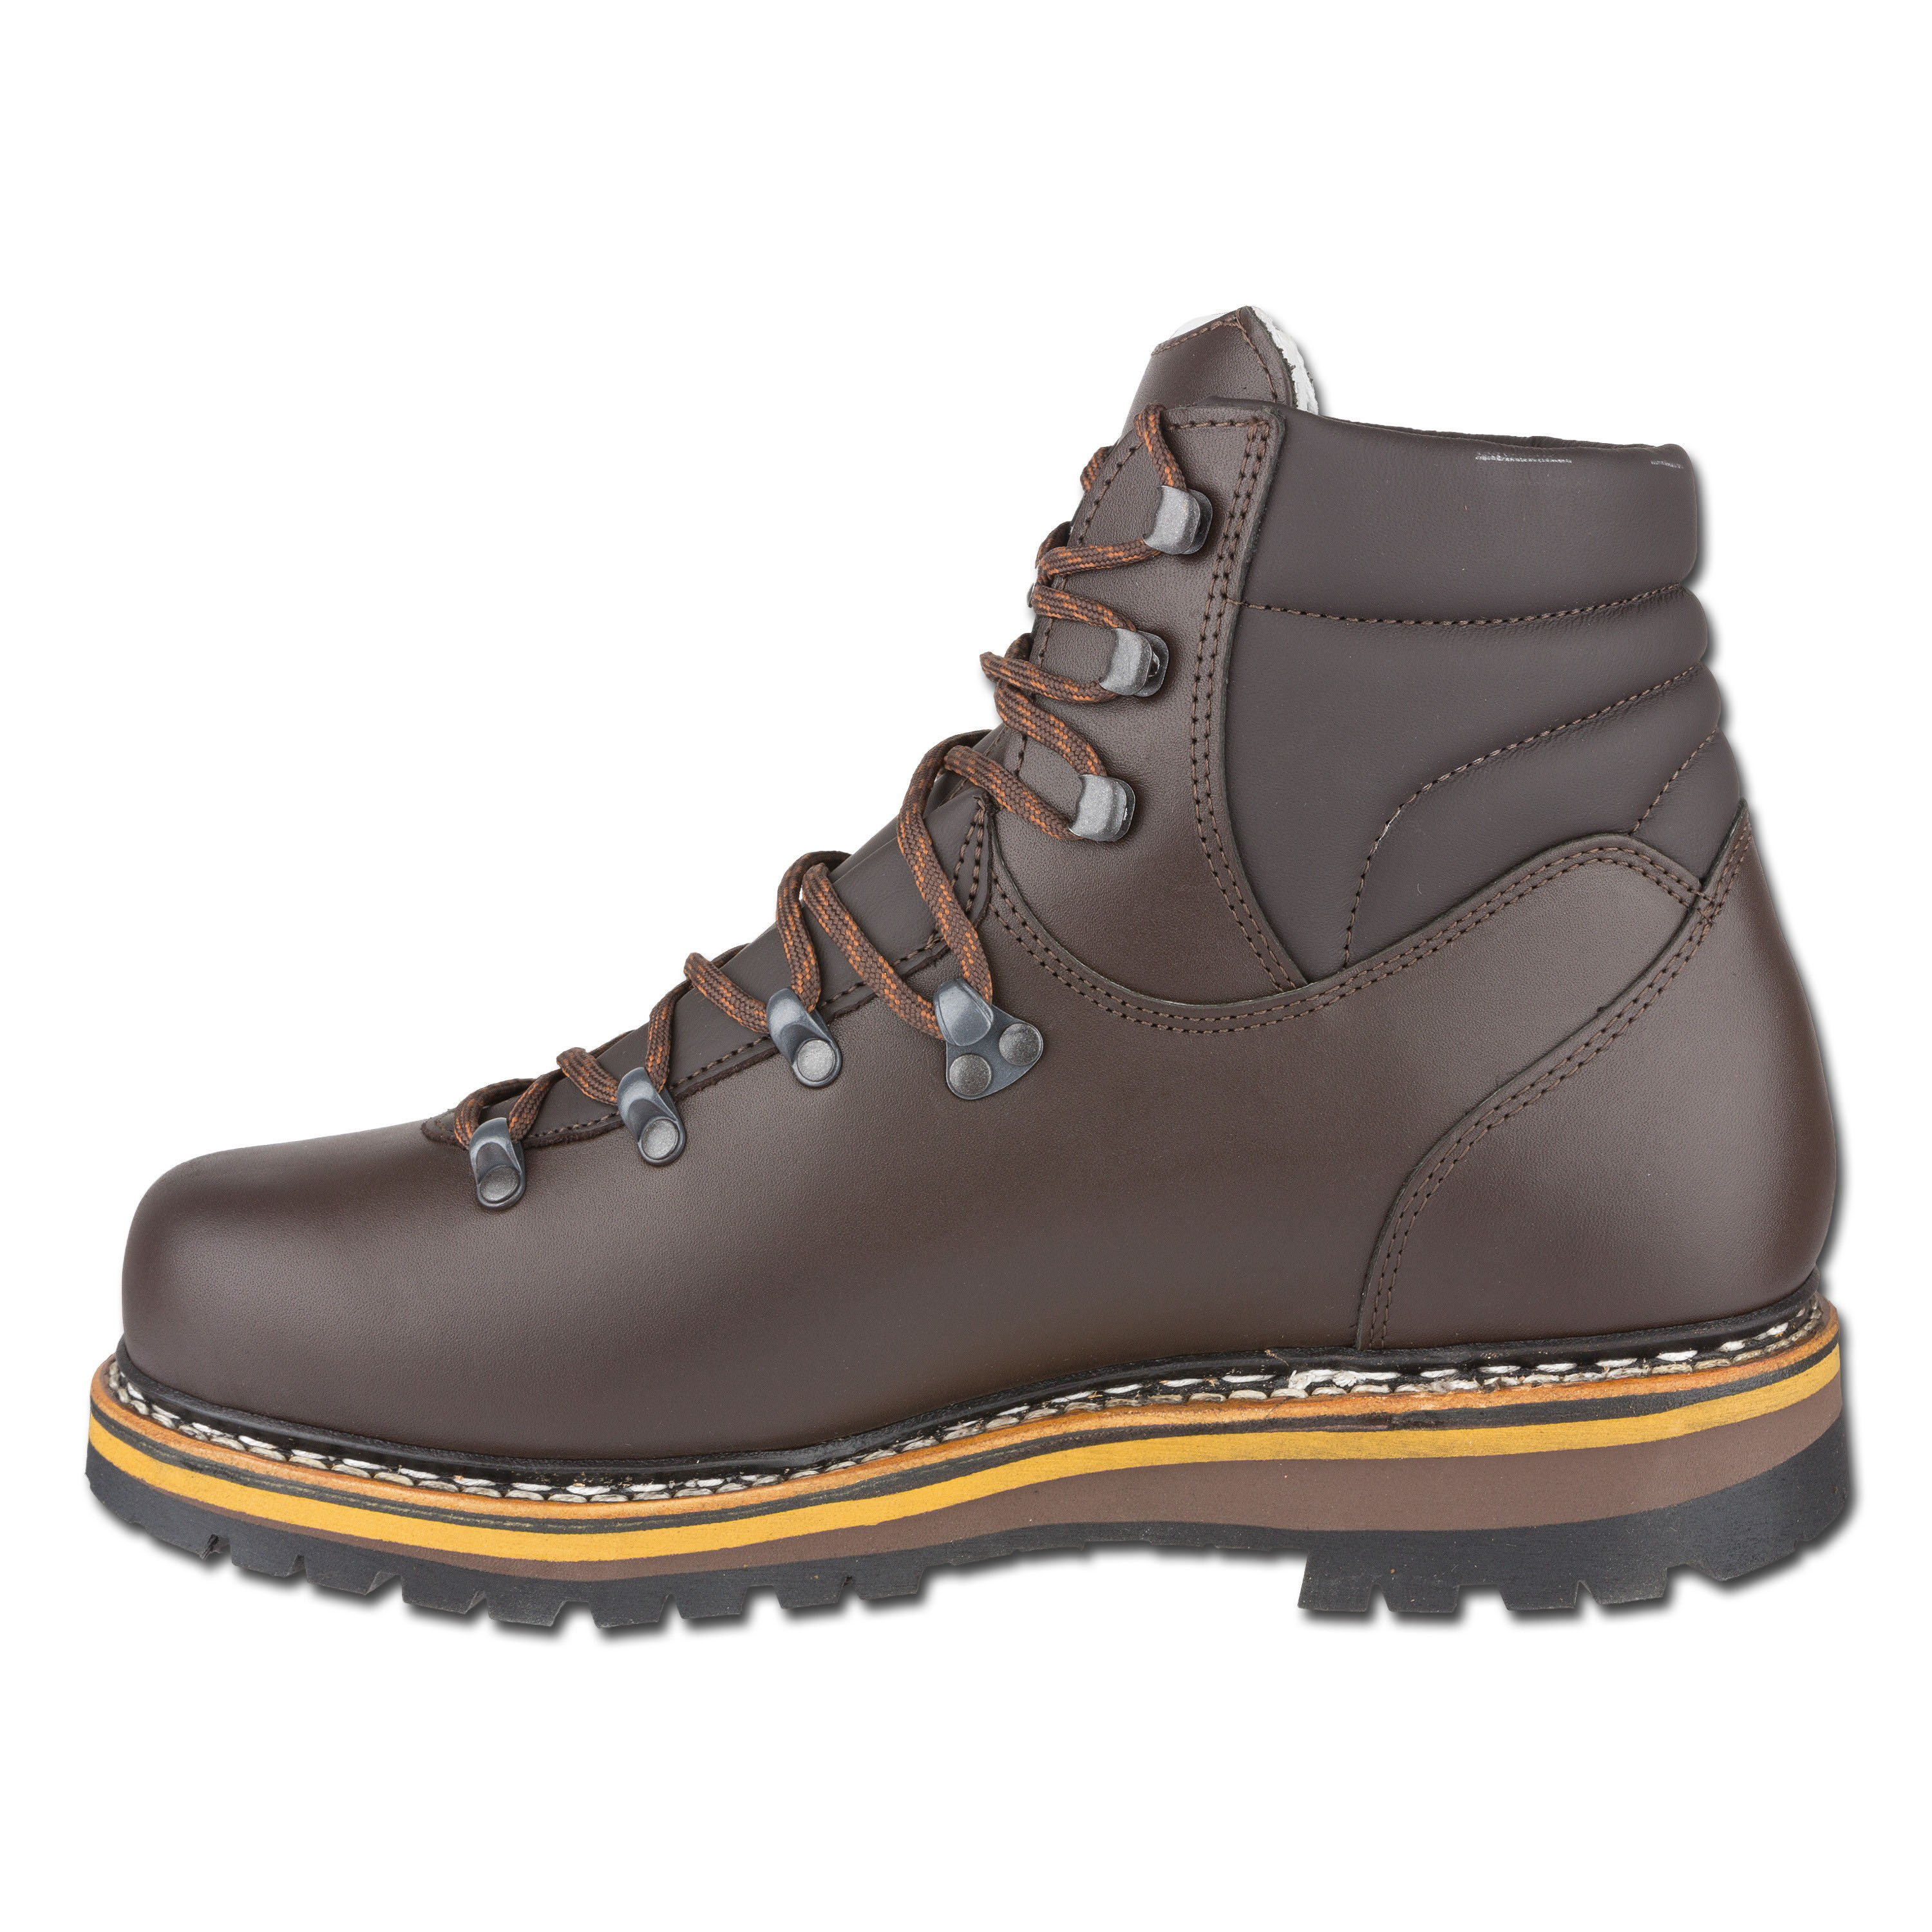 Hanwag Grünten Boots brown | Hanwag Grünten Boots brown | Hiking Boots ...